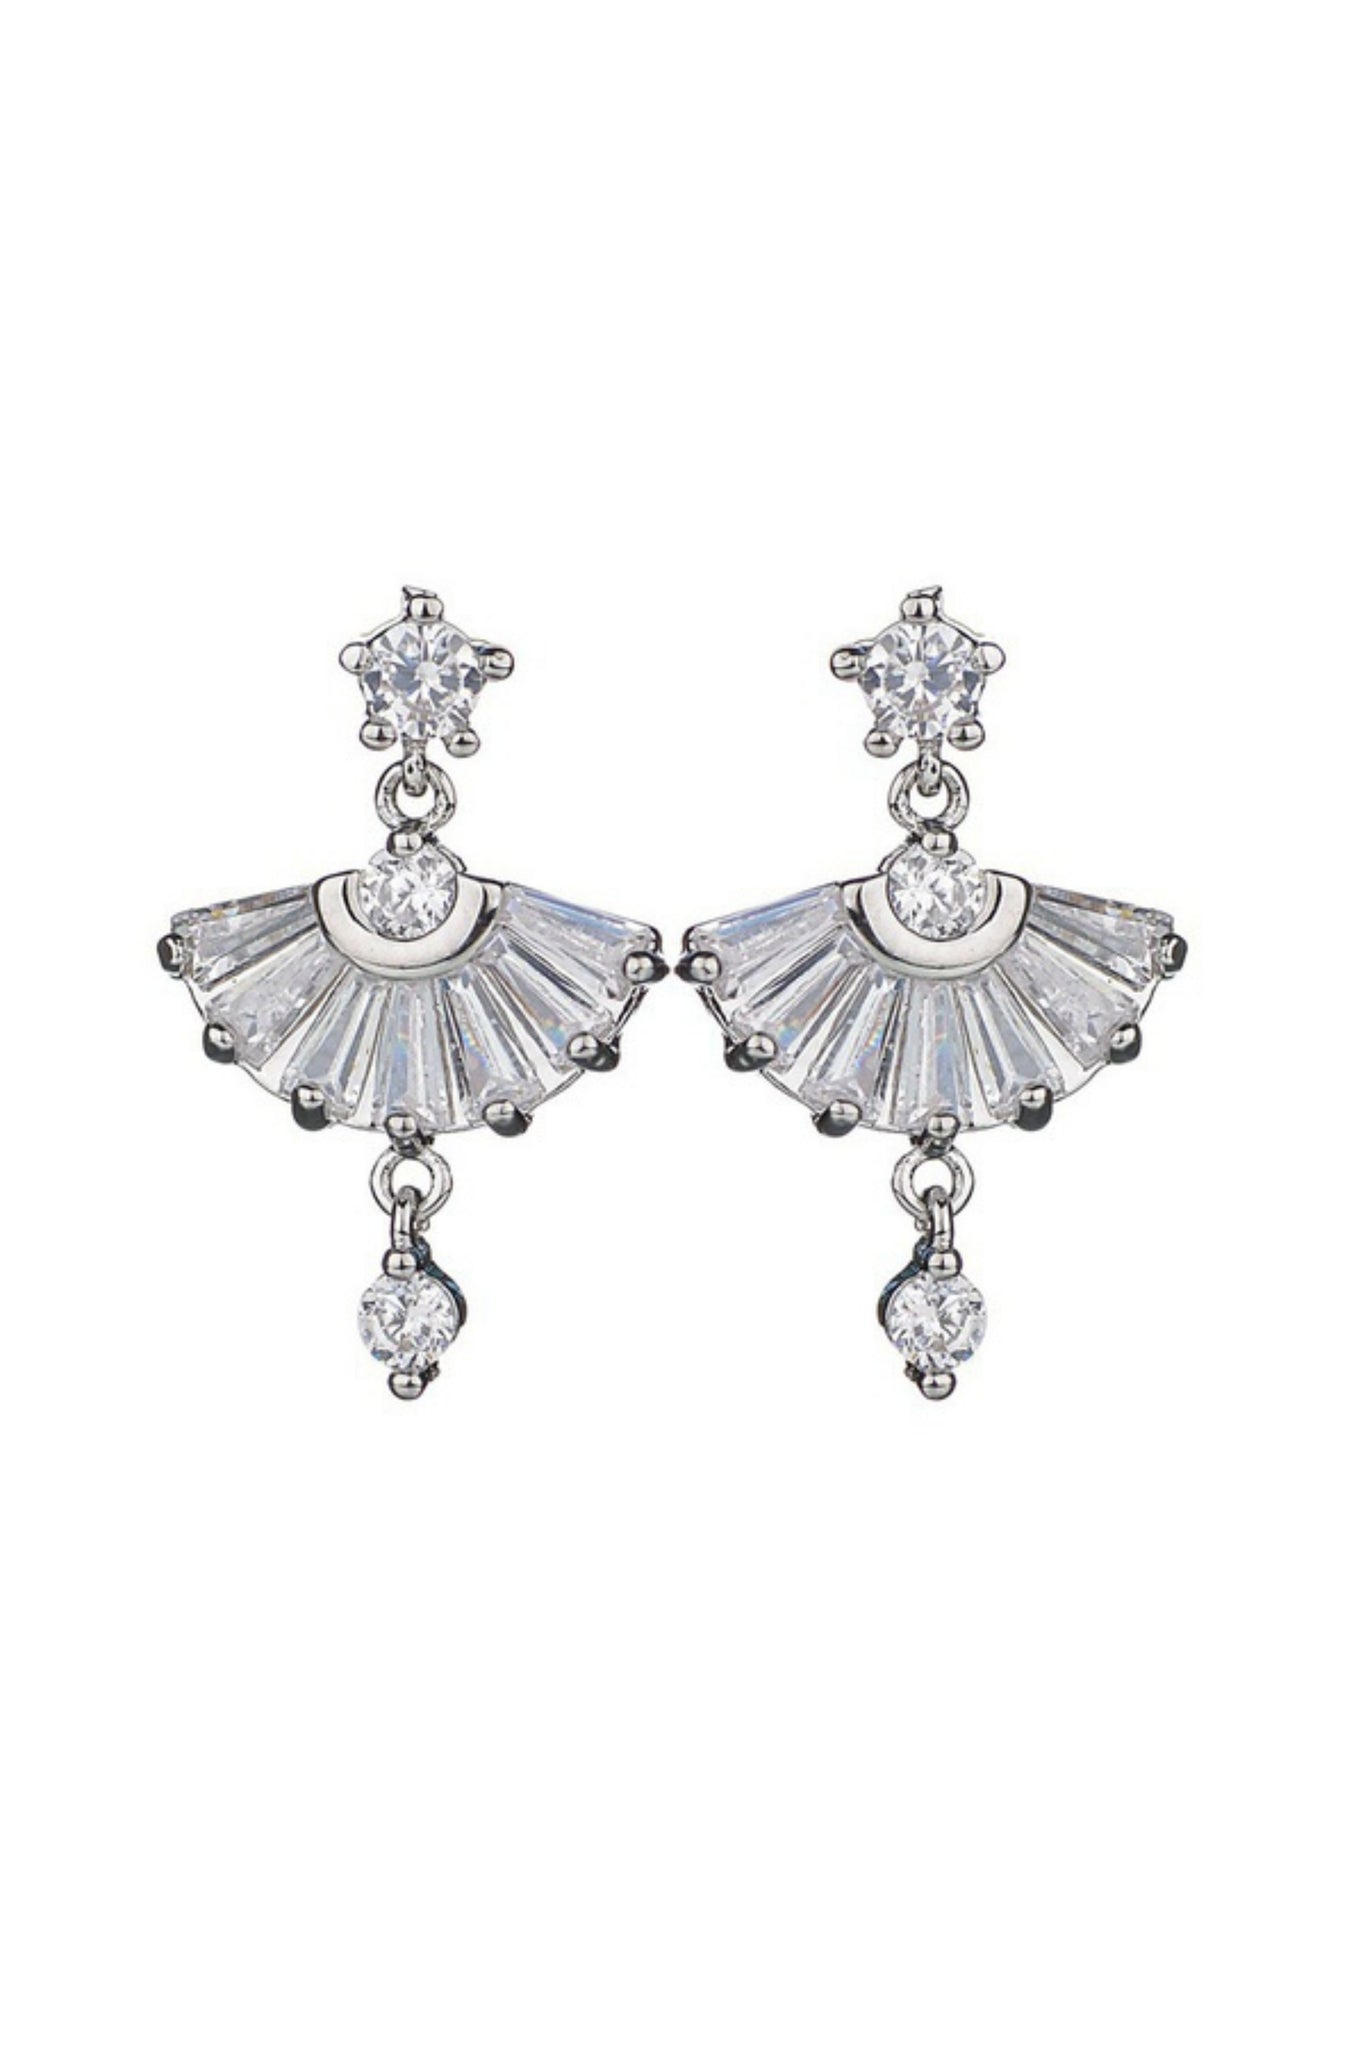 Sydney Australia Art Deco Gift Fashion Bow Earrings Drop Stud Pierced Hook   Amazonin Jewellery